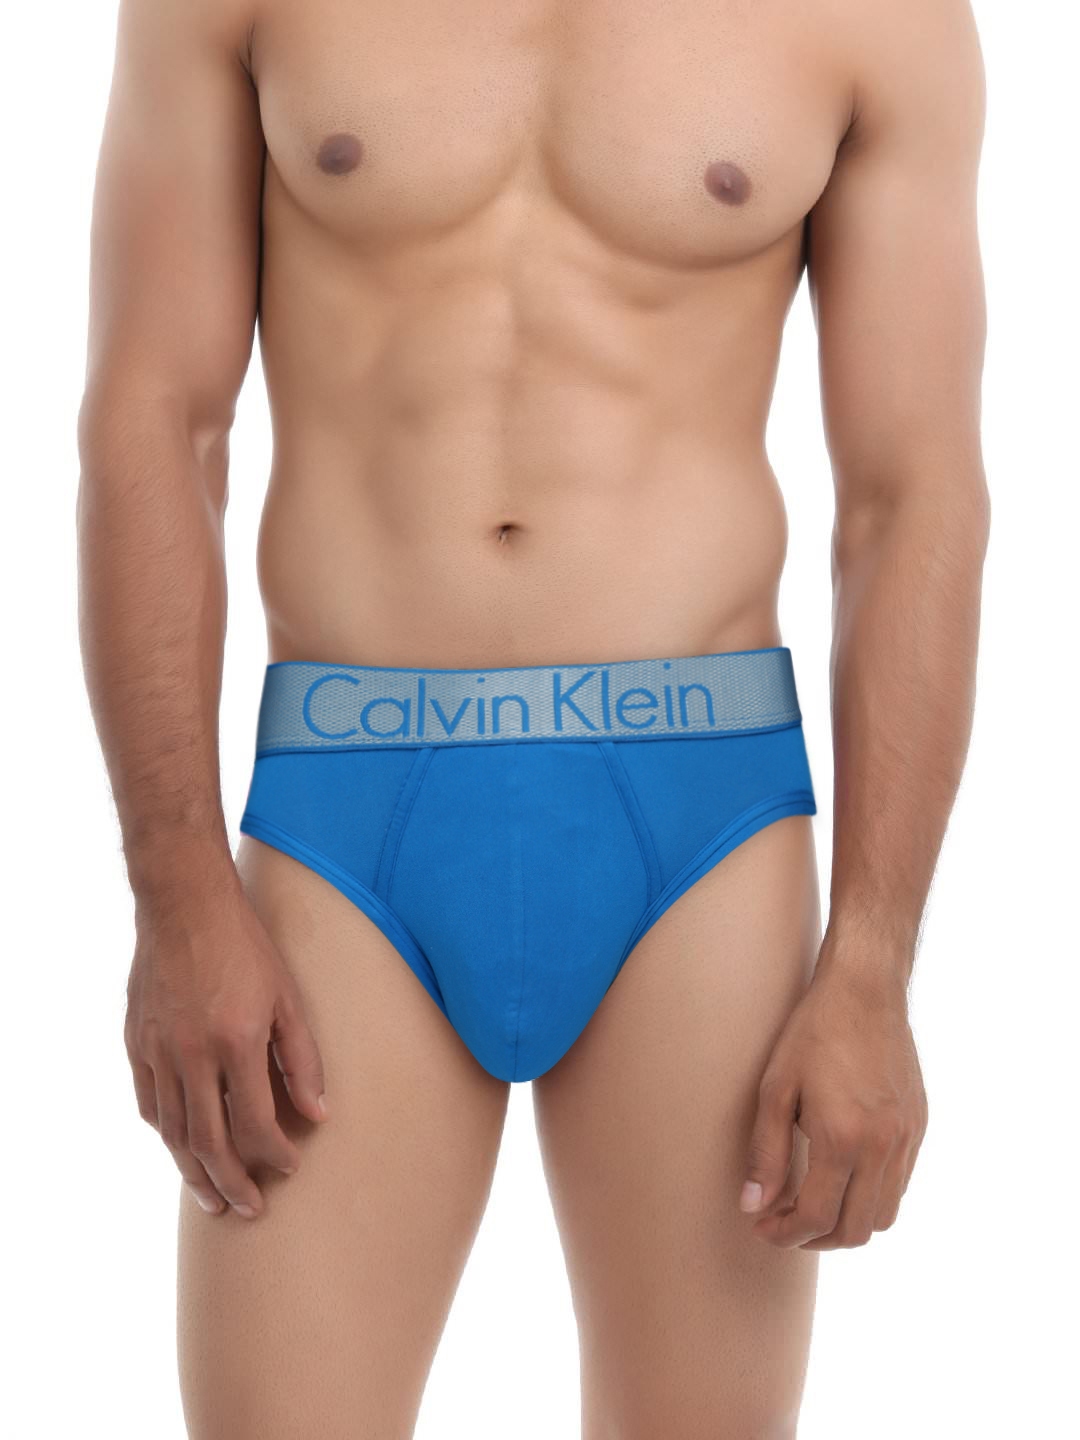 calvin klein male underwear